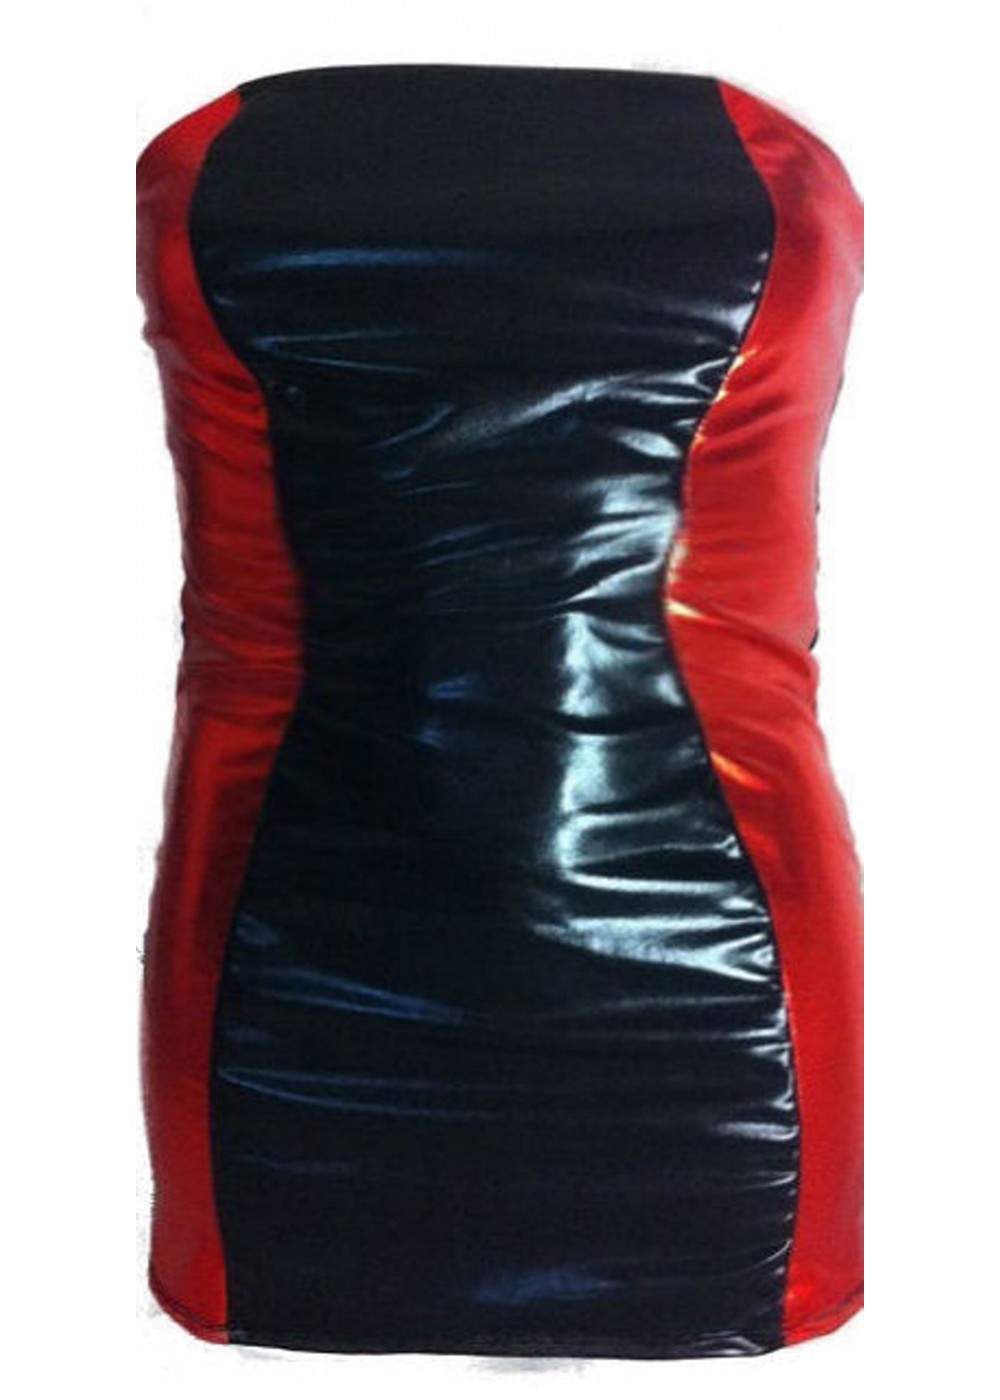 Leder-Optik Große Größen BANDEAU-Kleid schwarz rot - 